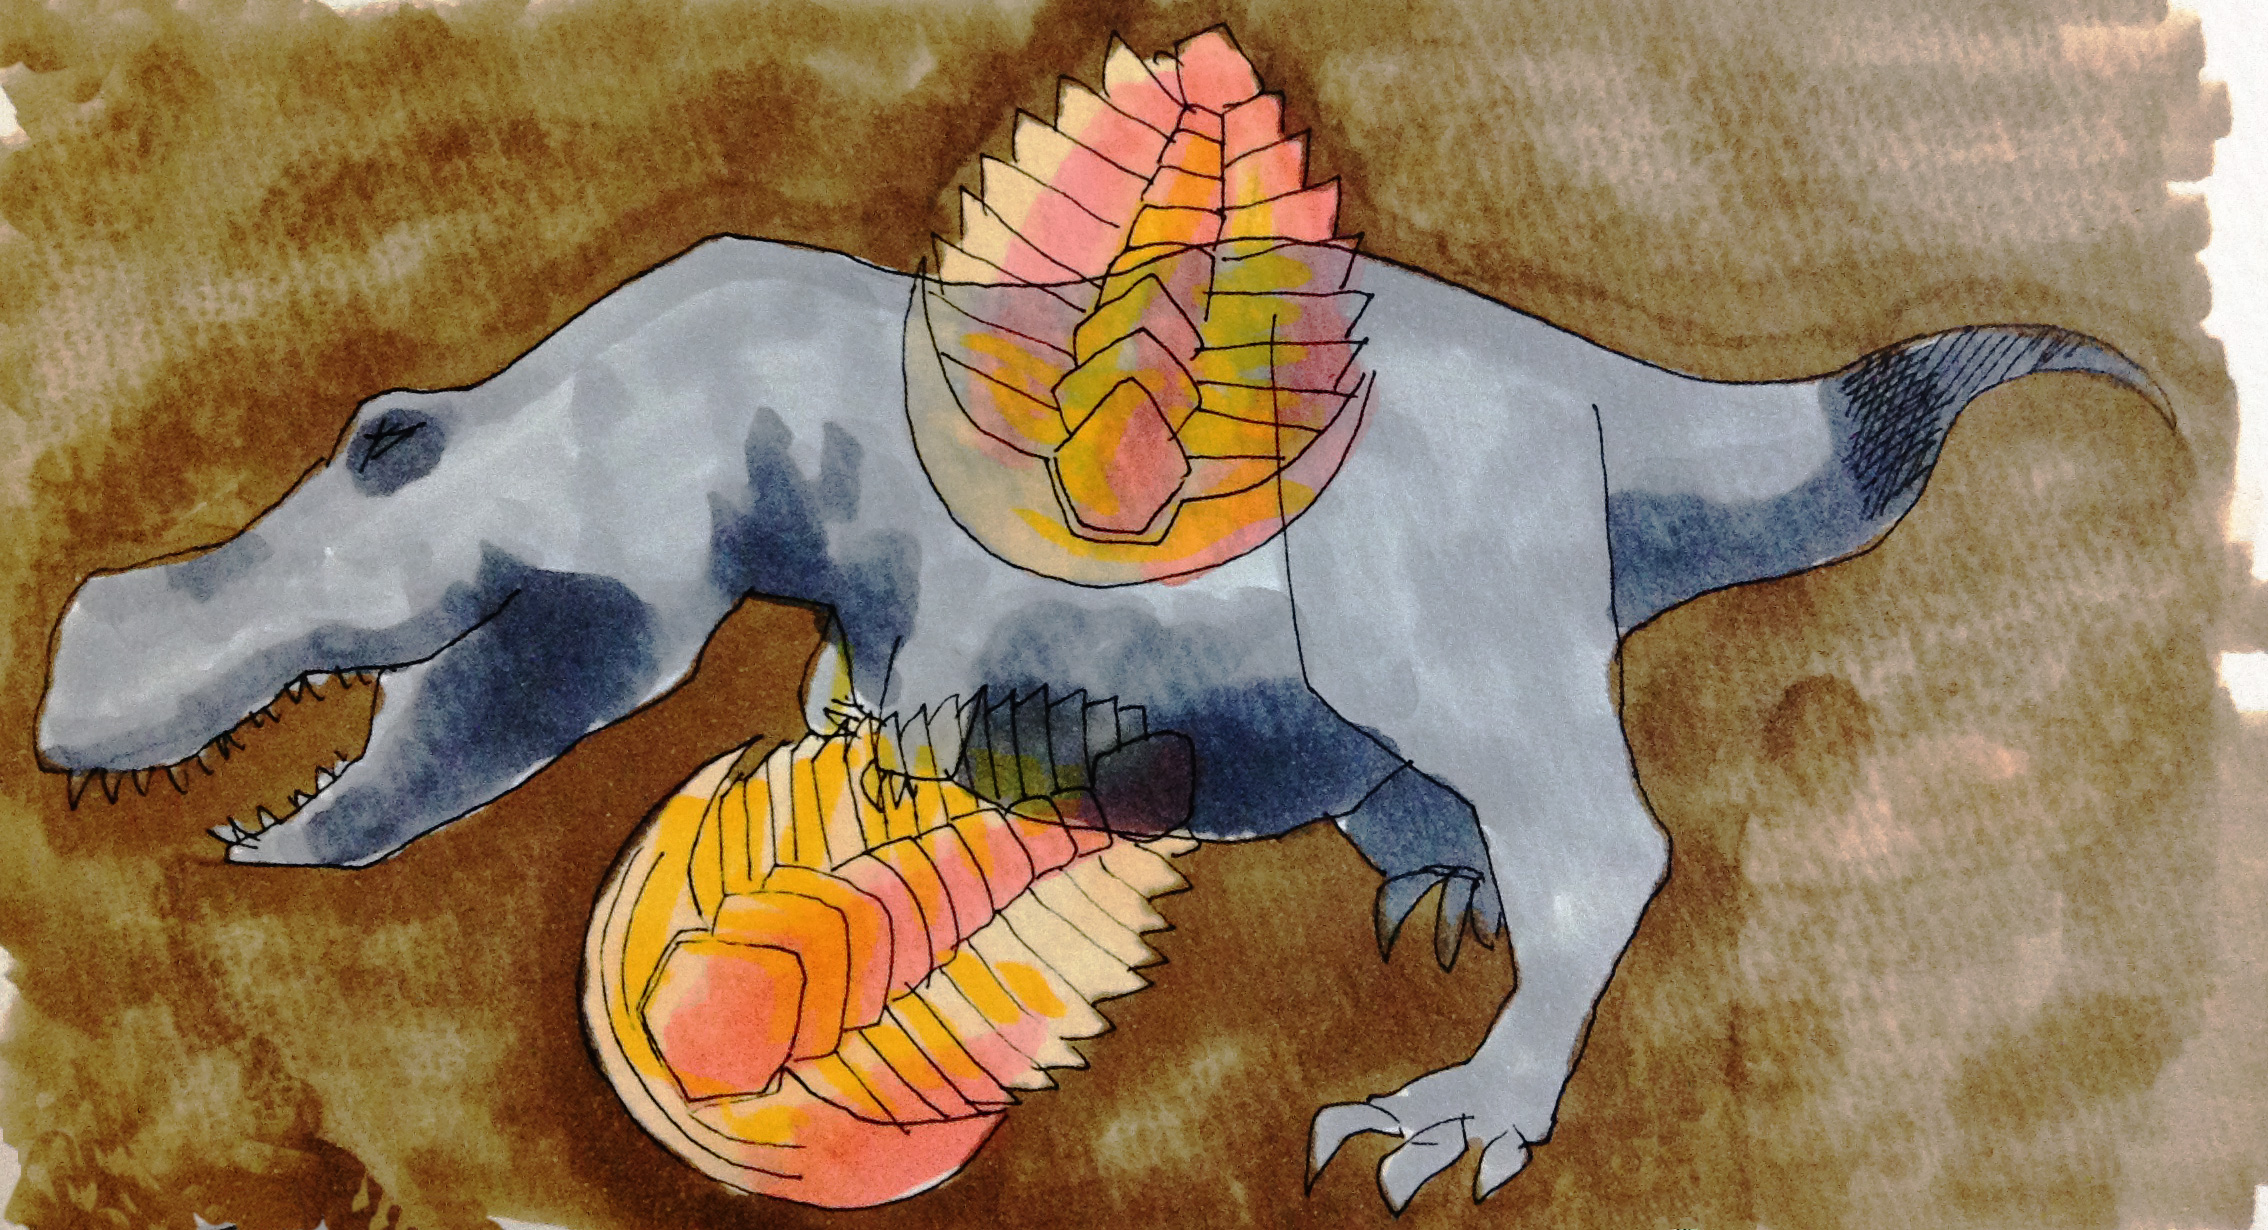 ジュラシックパークに登場する恐竜(ティラノサウルス)と古生代の生物(三葉虫)の化石のイメージをコピックで描いたイラスト